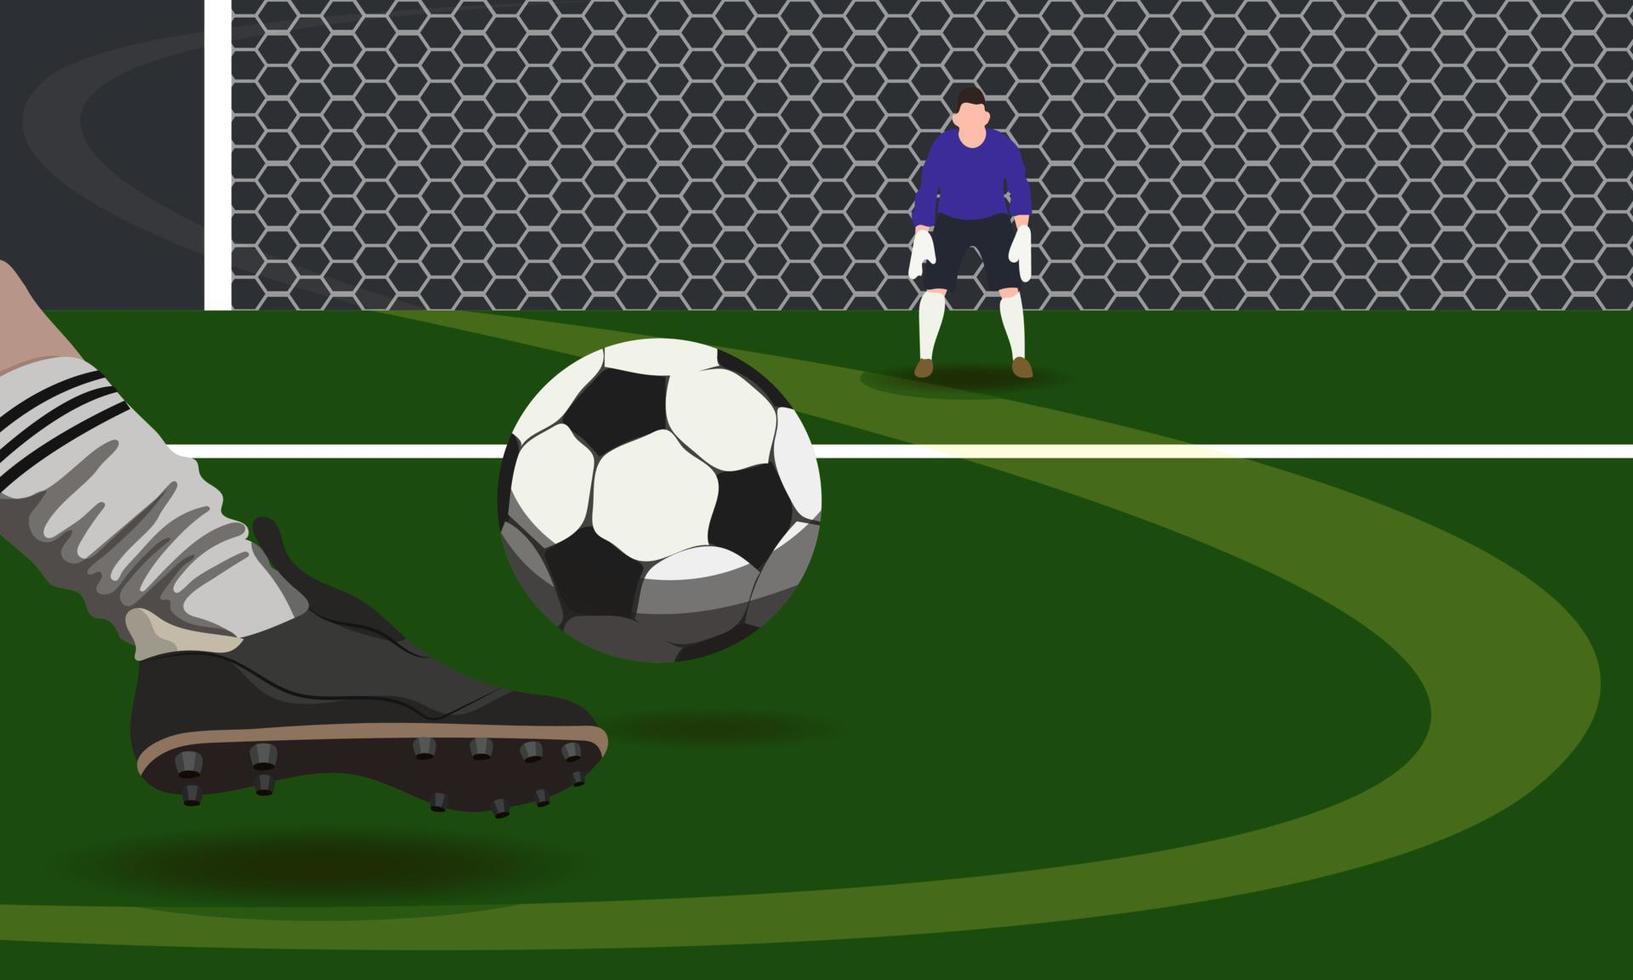 jogando futebol no campo com uma bola. marcando um gol. imitação de um jogo  de futebol.